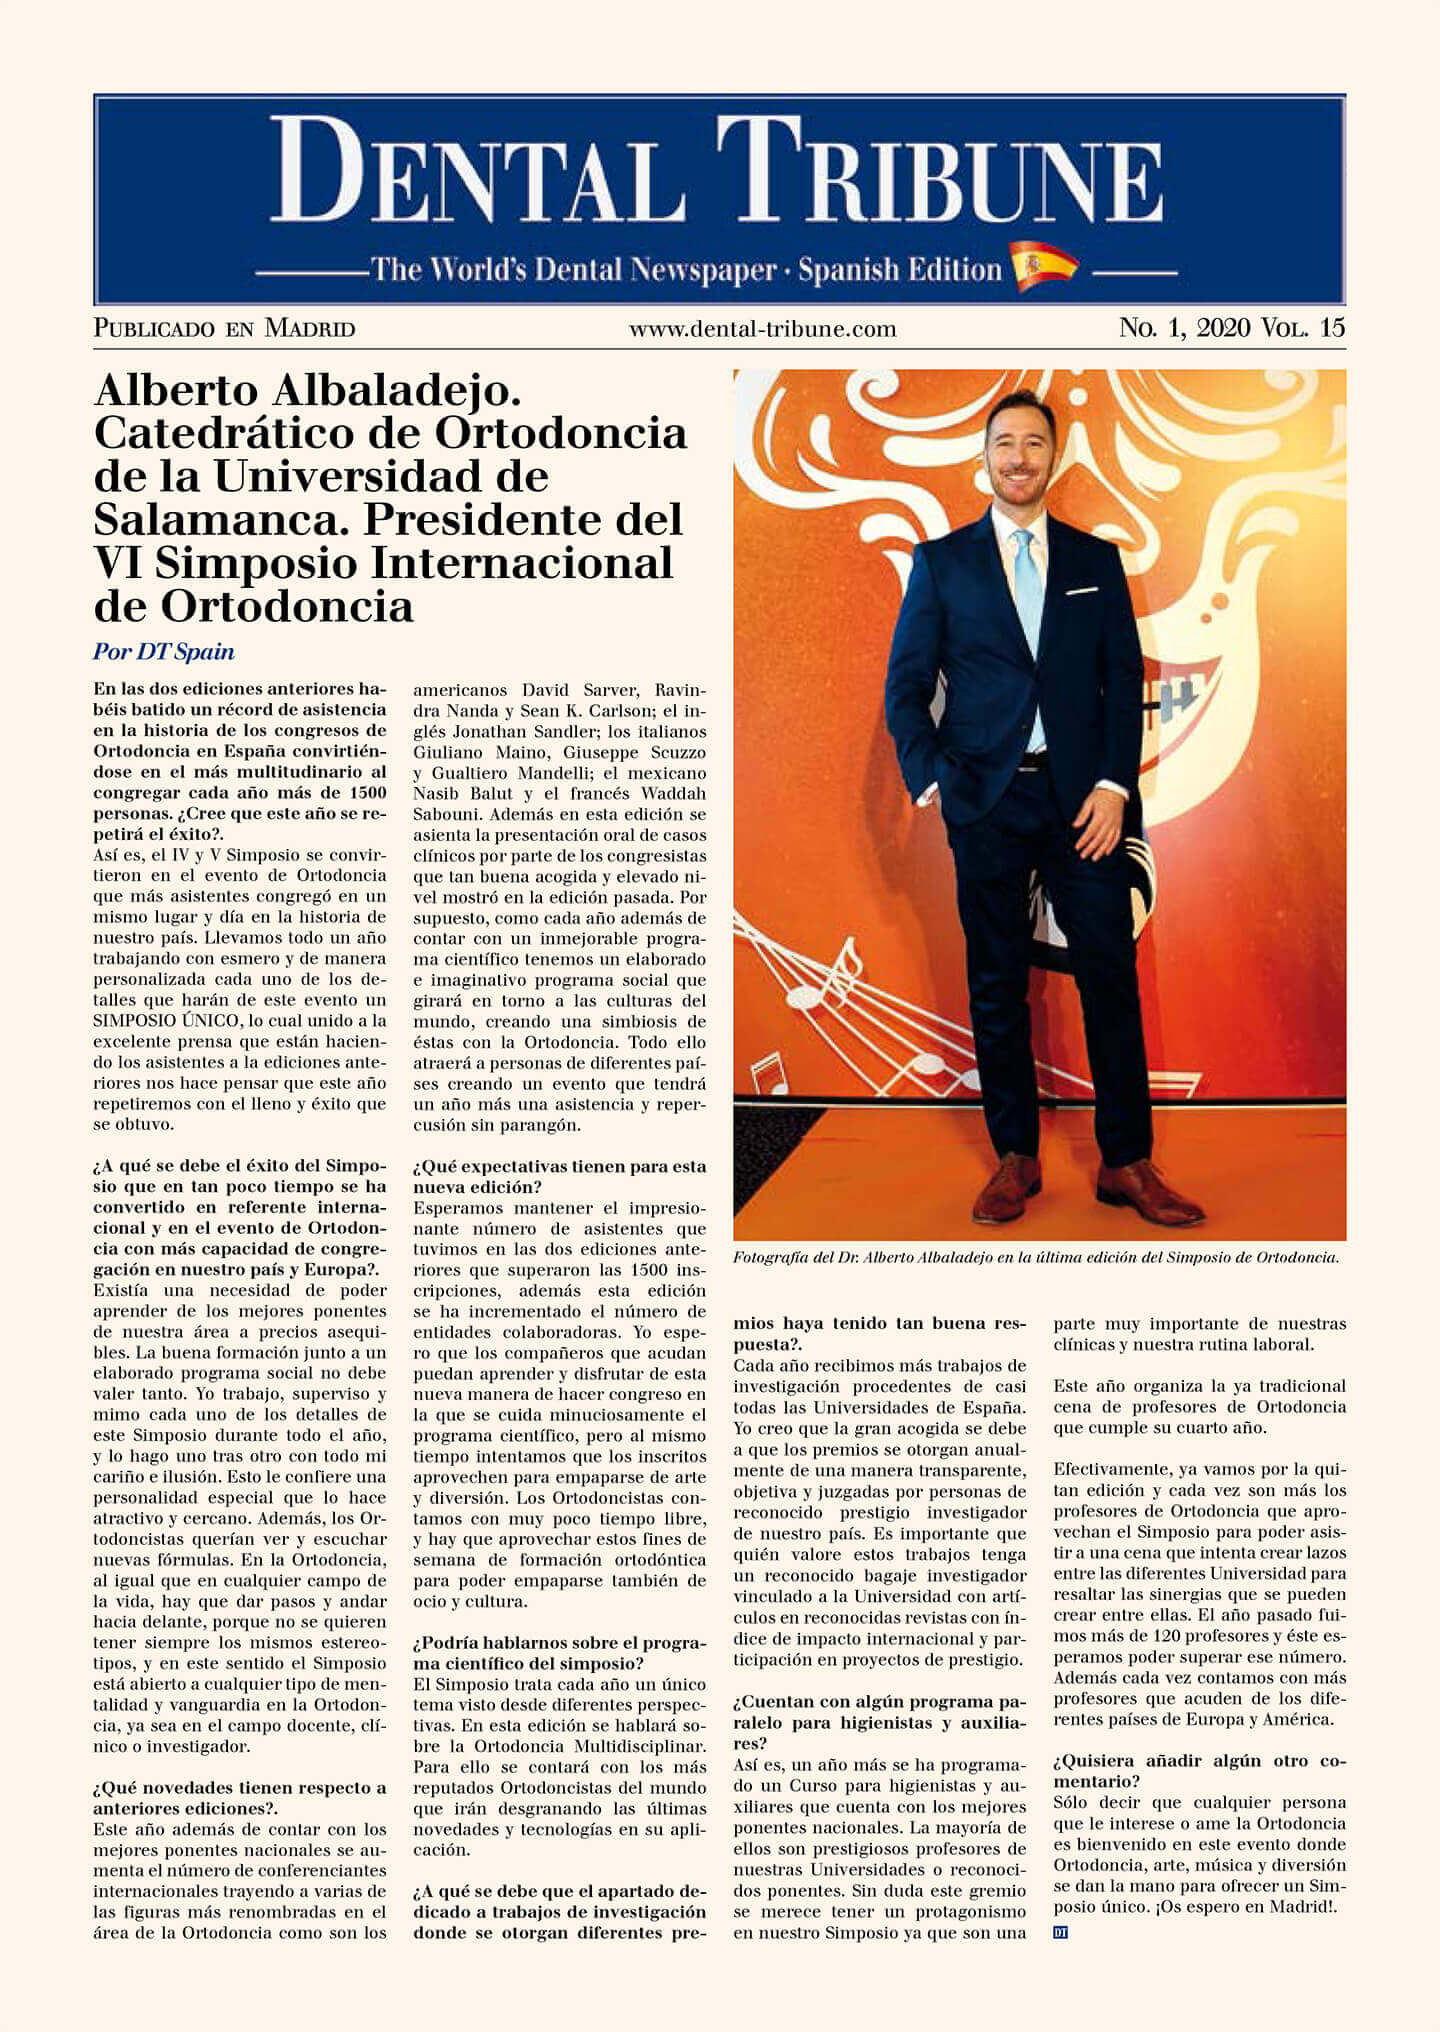 Alberto Albaladejo. Catedrático de Ortodoncia de la Universidad de Salamanca. Presidente del VI Simposio Internacional de Ortodoncia